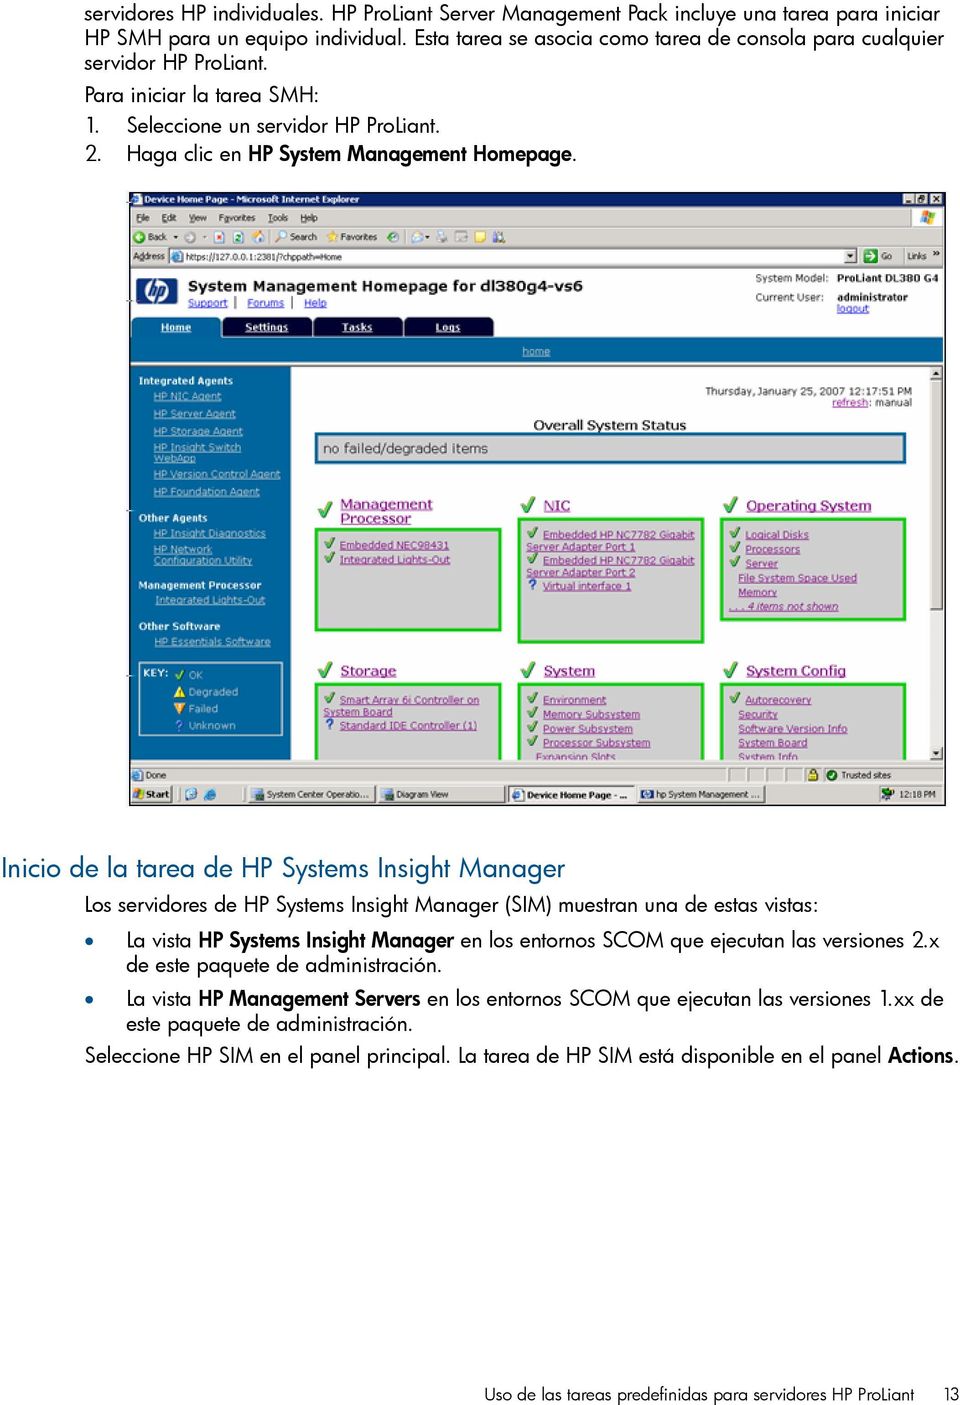 Inicio de la tarea de HP Systems Insight Manager Los servidores de HP Systems Insight Manager (SIM) muestran una de estas vistas: La vista HP Systems Insight Manager en los entornos SCOM que ejecutan